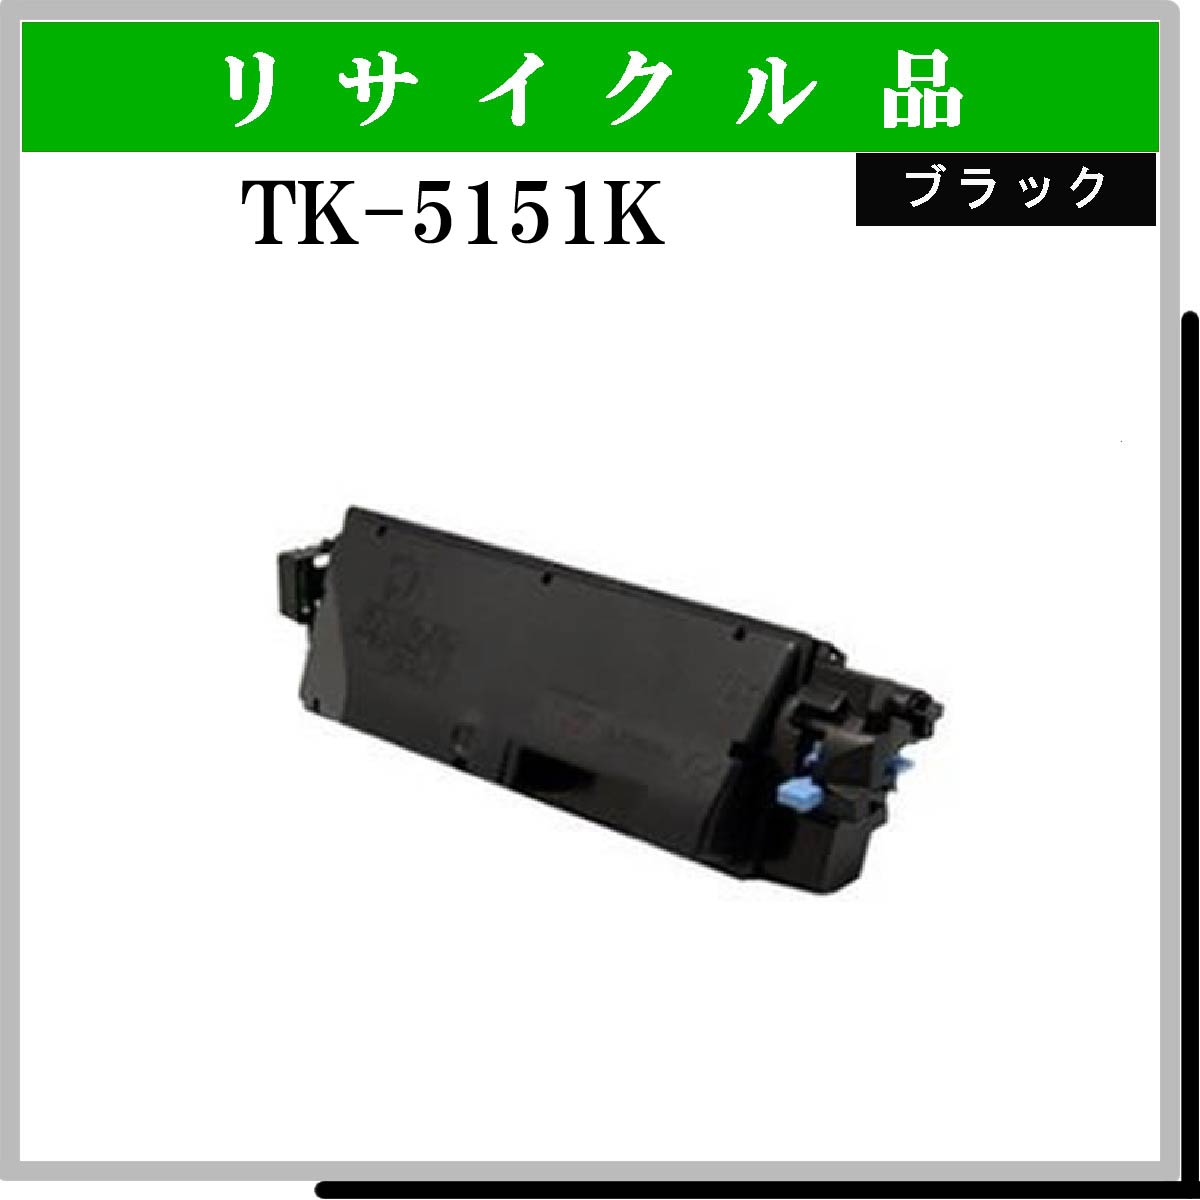 TK-5151K